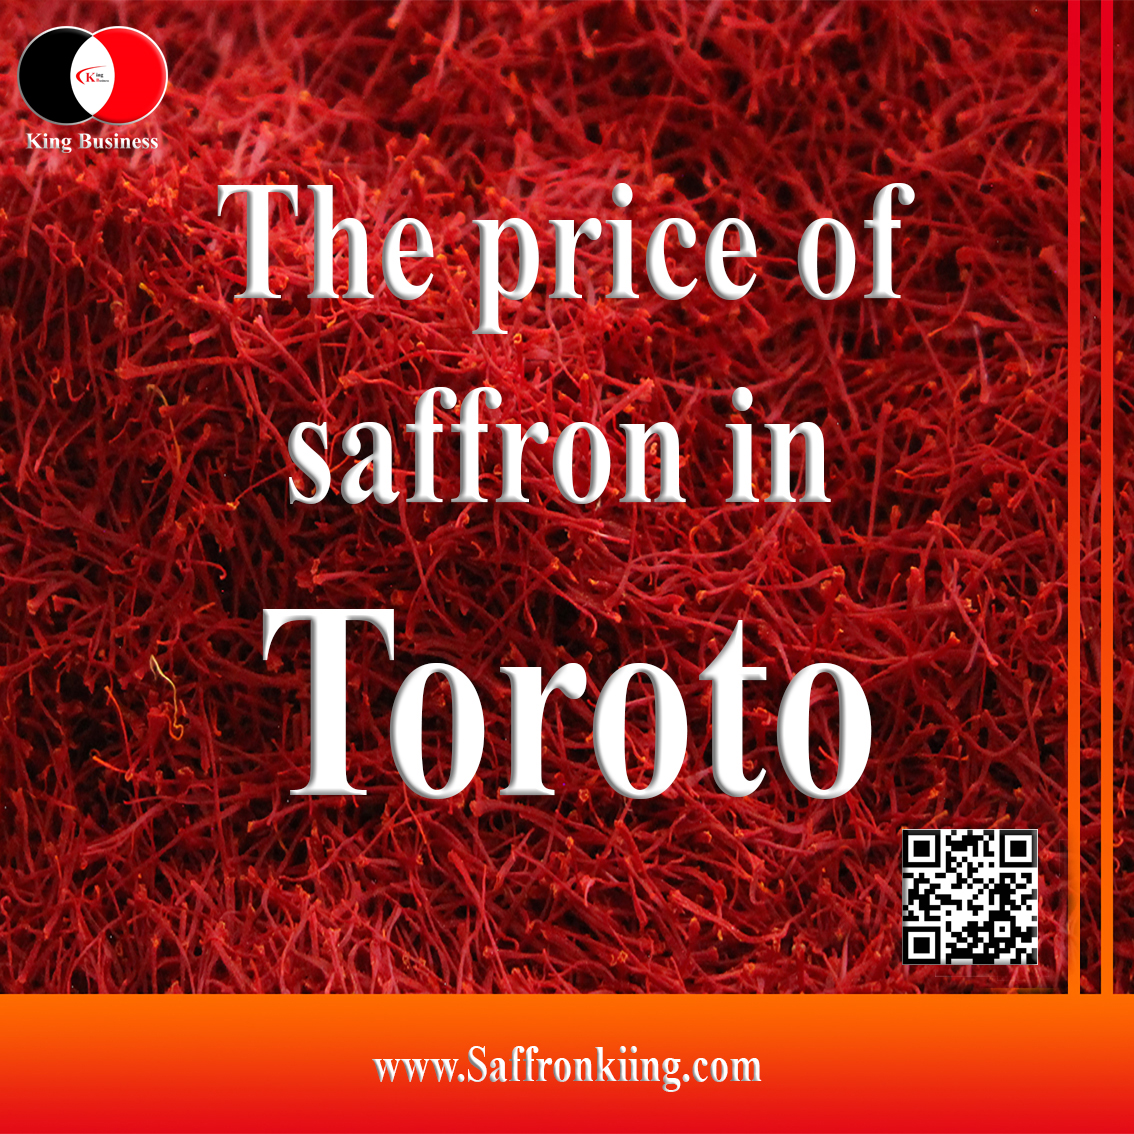 The price of saffron in Toronto